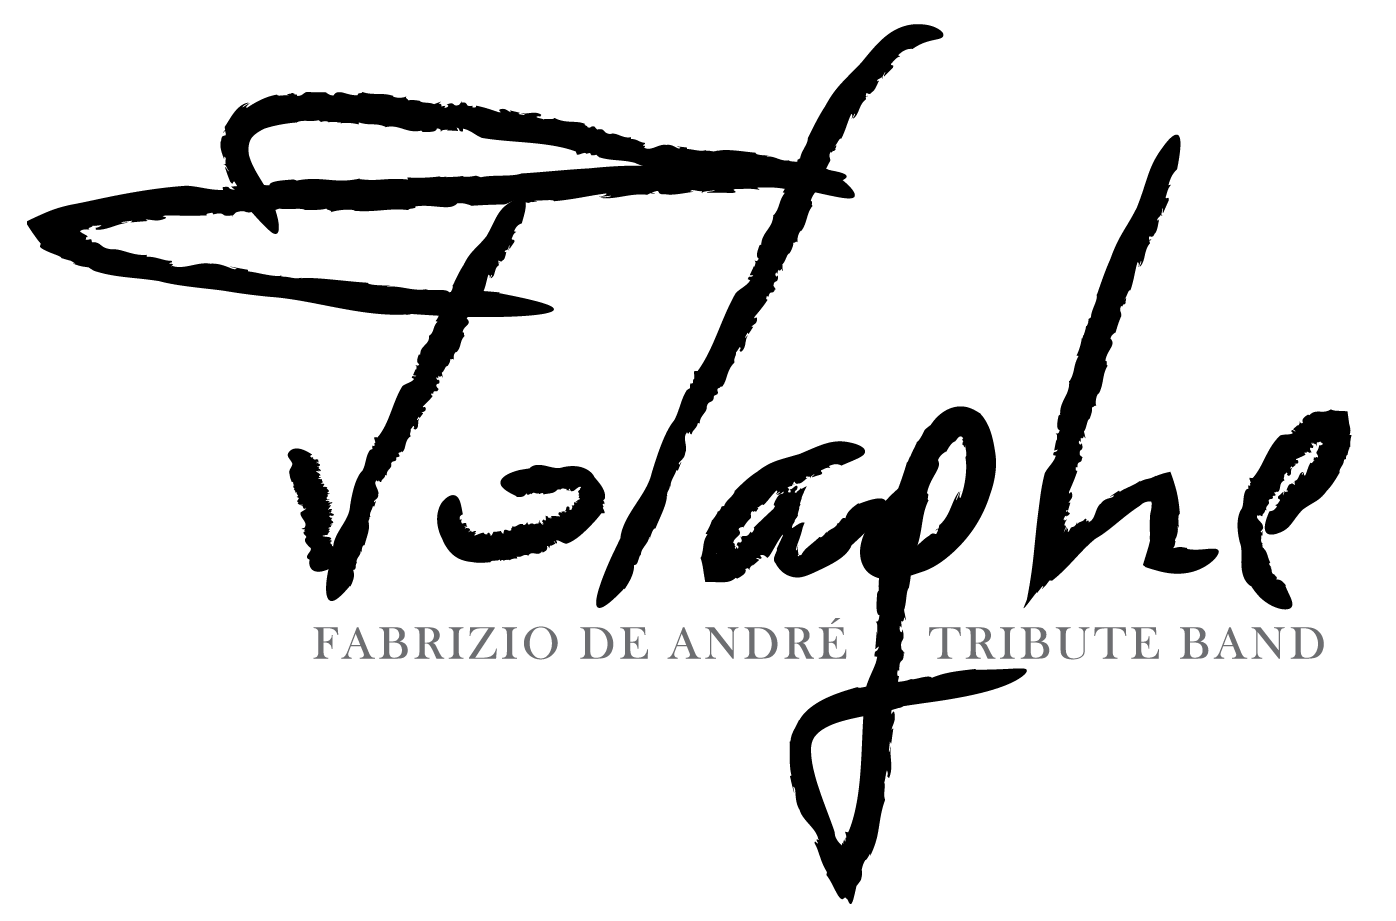 FOLAGHE | Fabrizio De Andrè Tribute Band